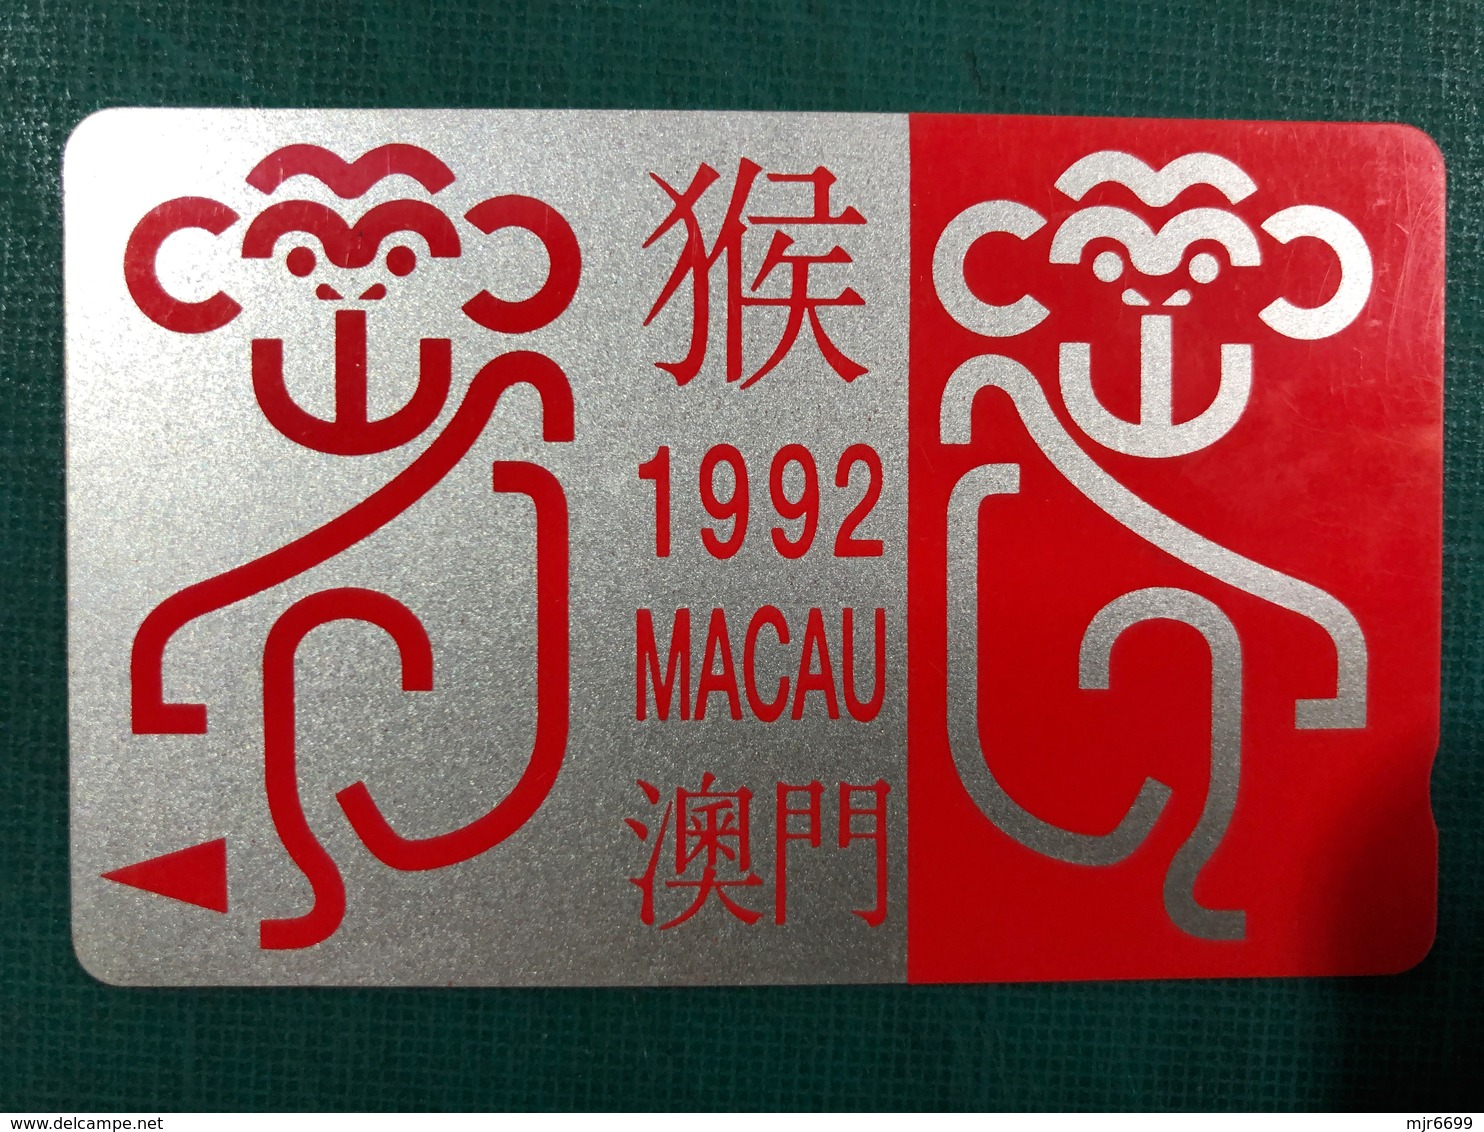 MACAU 1992 ZODIAC YEAR OF THE MONKEY PHONE CARD, FINE USED - Macao